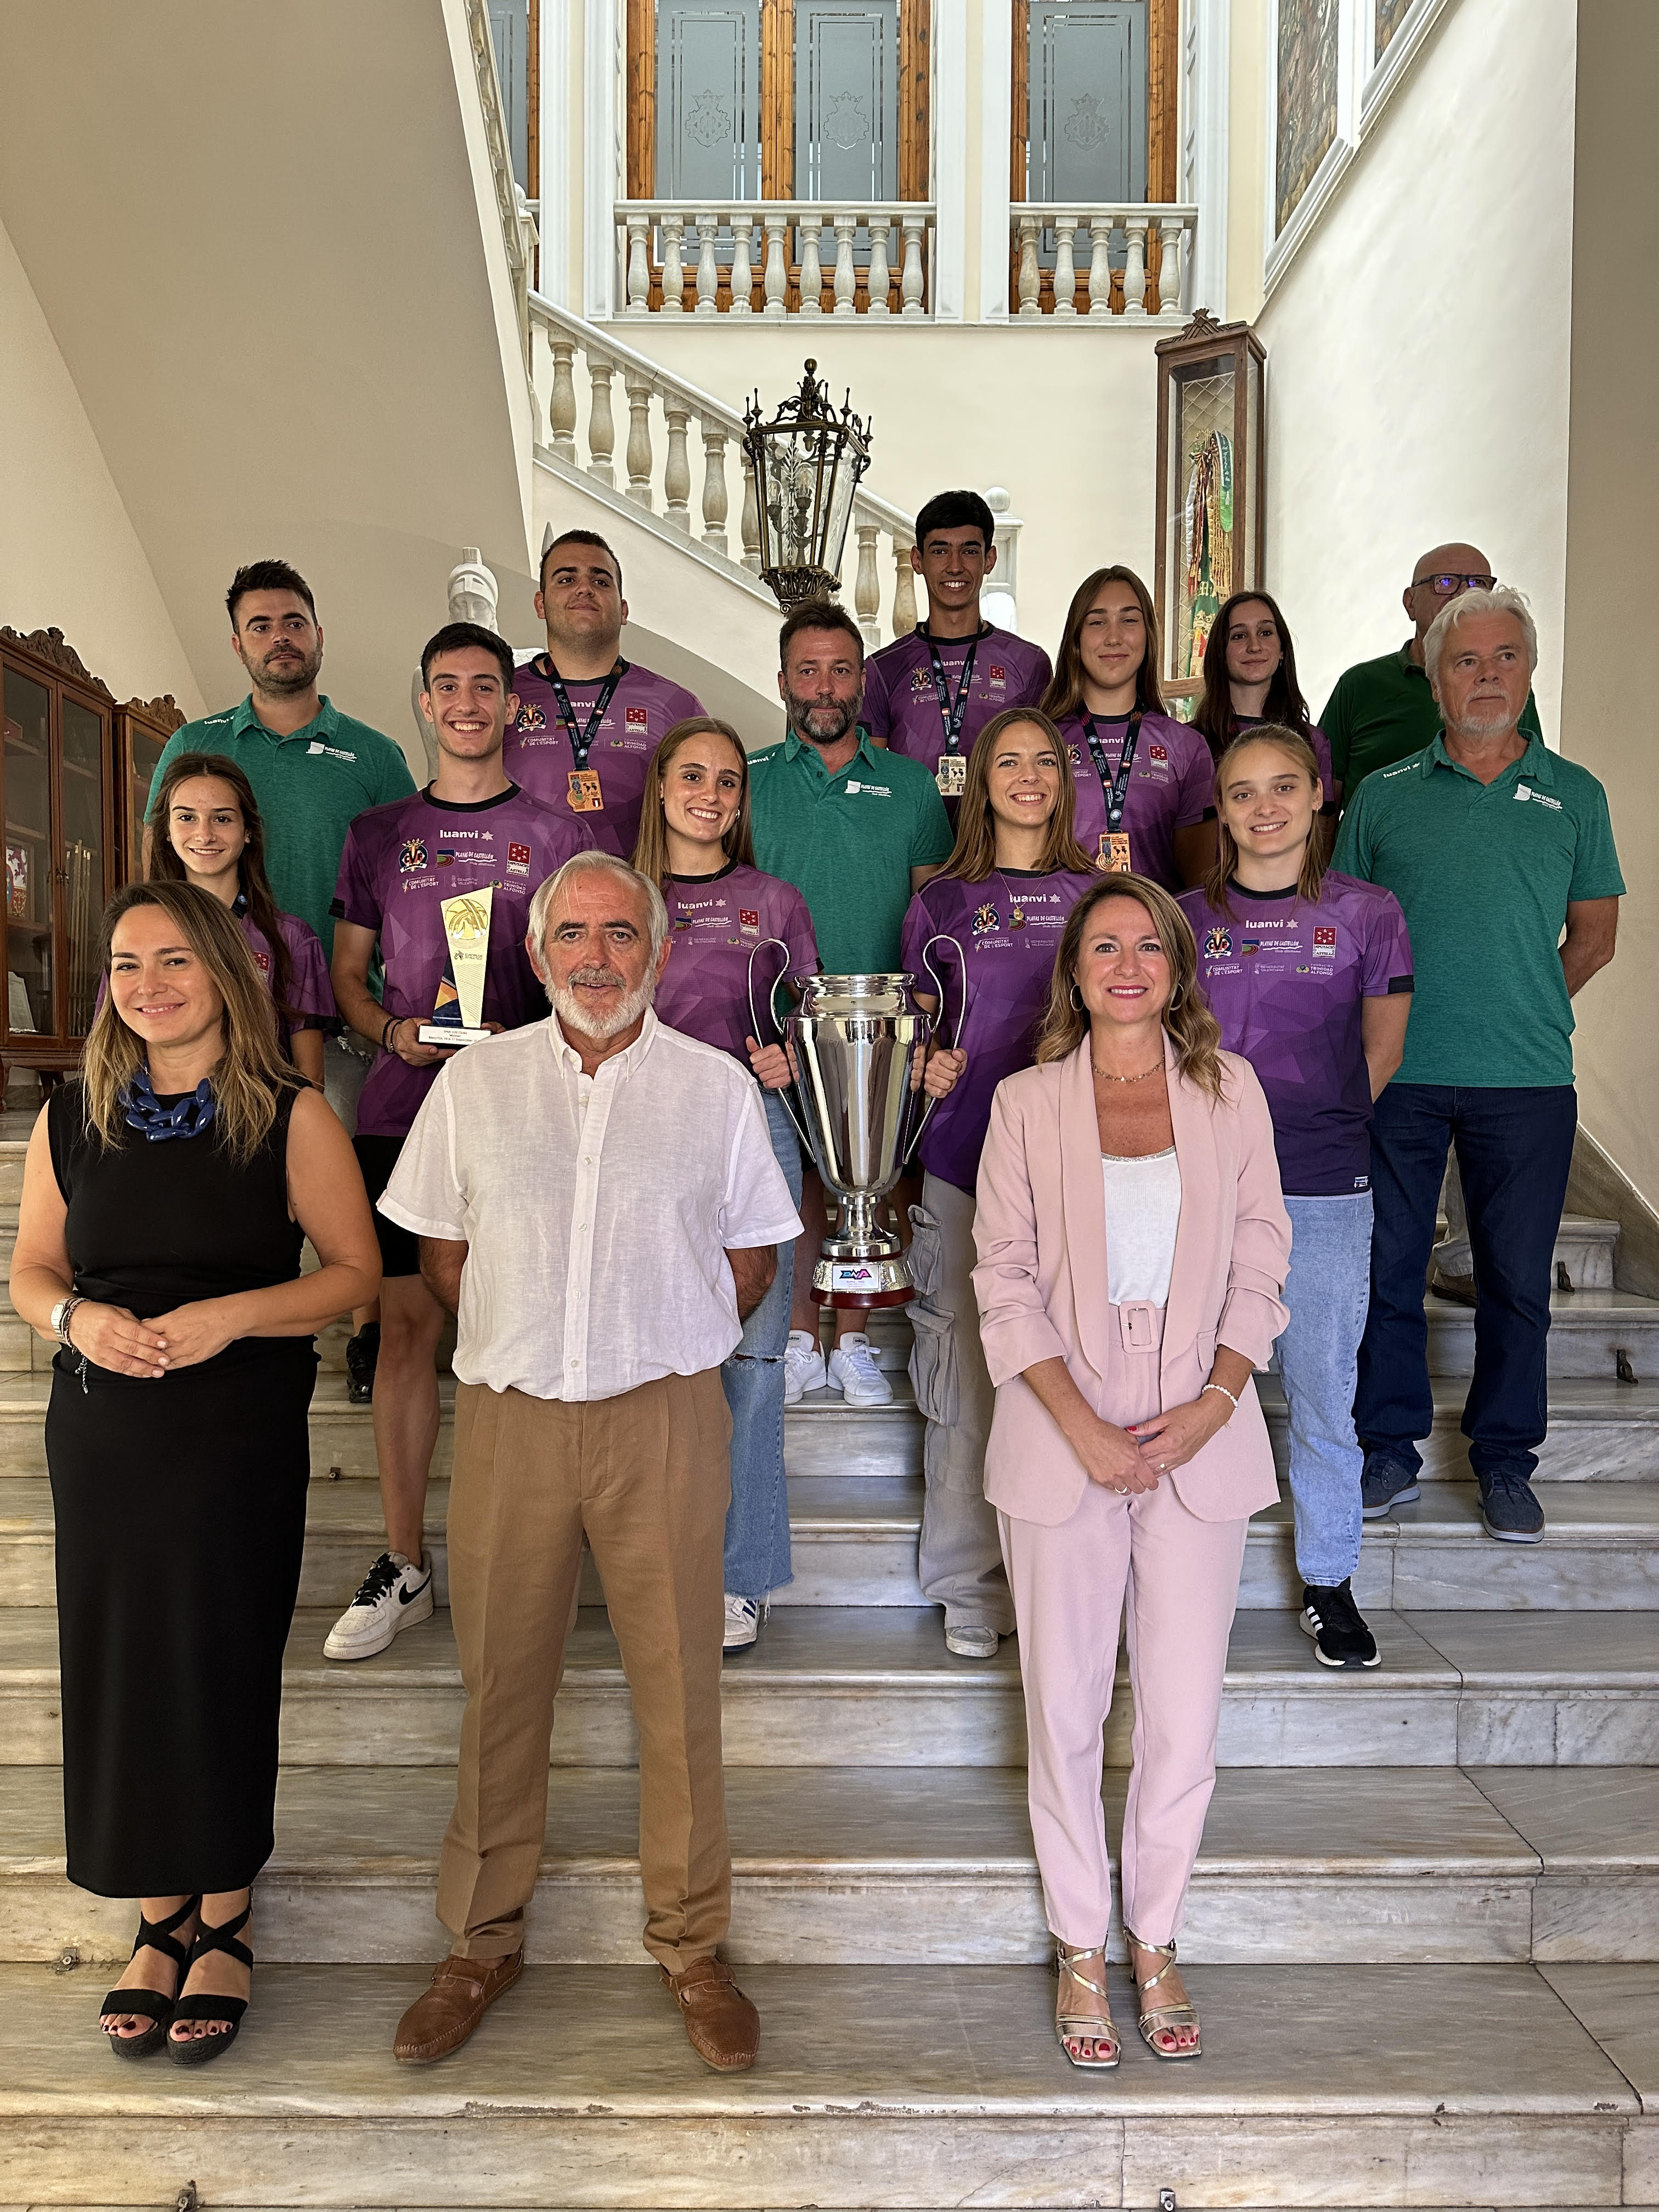 La alcaldesa de Castellón recibe al Playas de Castellón tras alzarse con el título de Campeones de Europa sub20 en pista